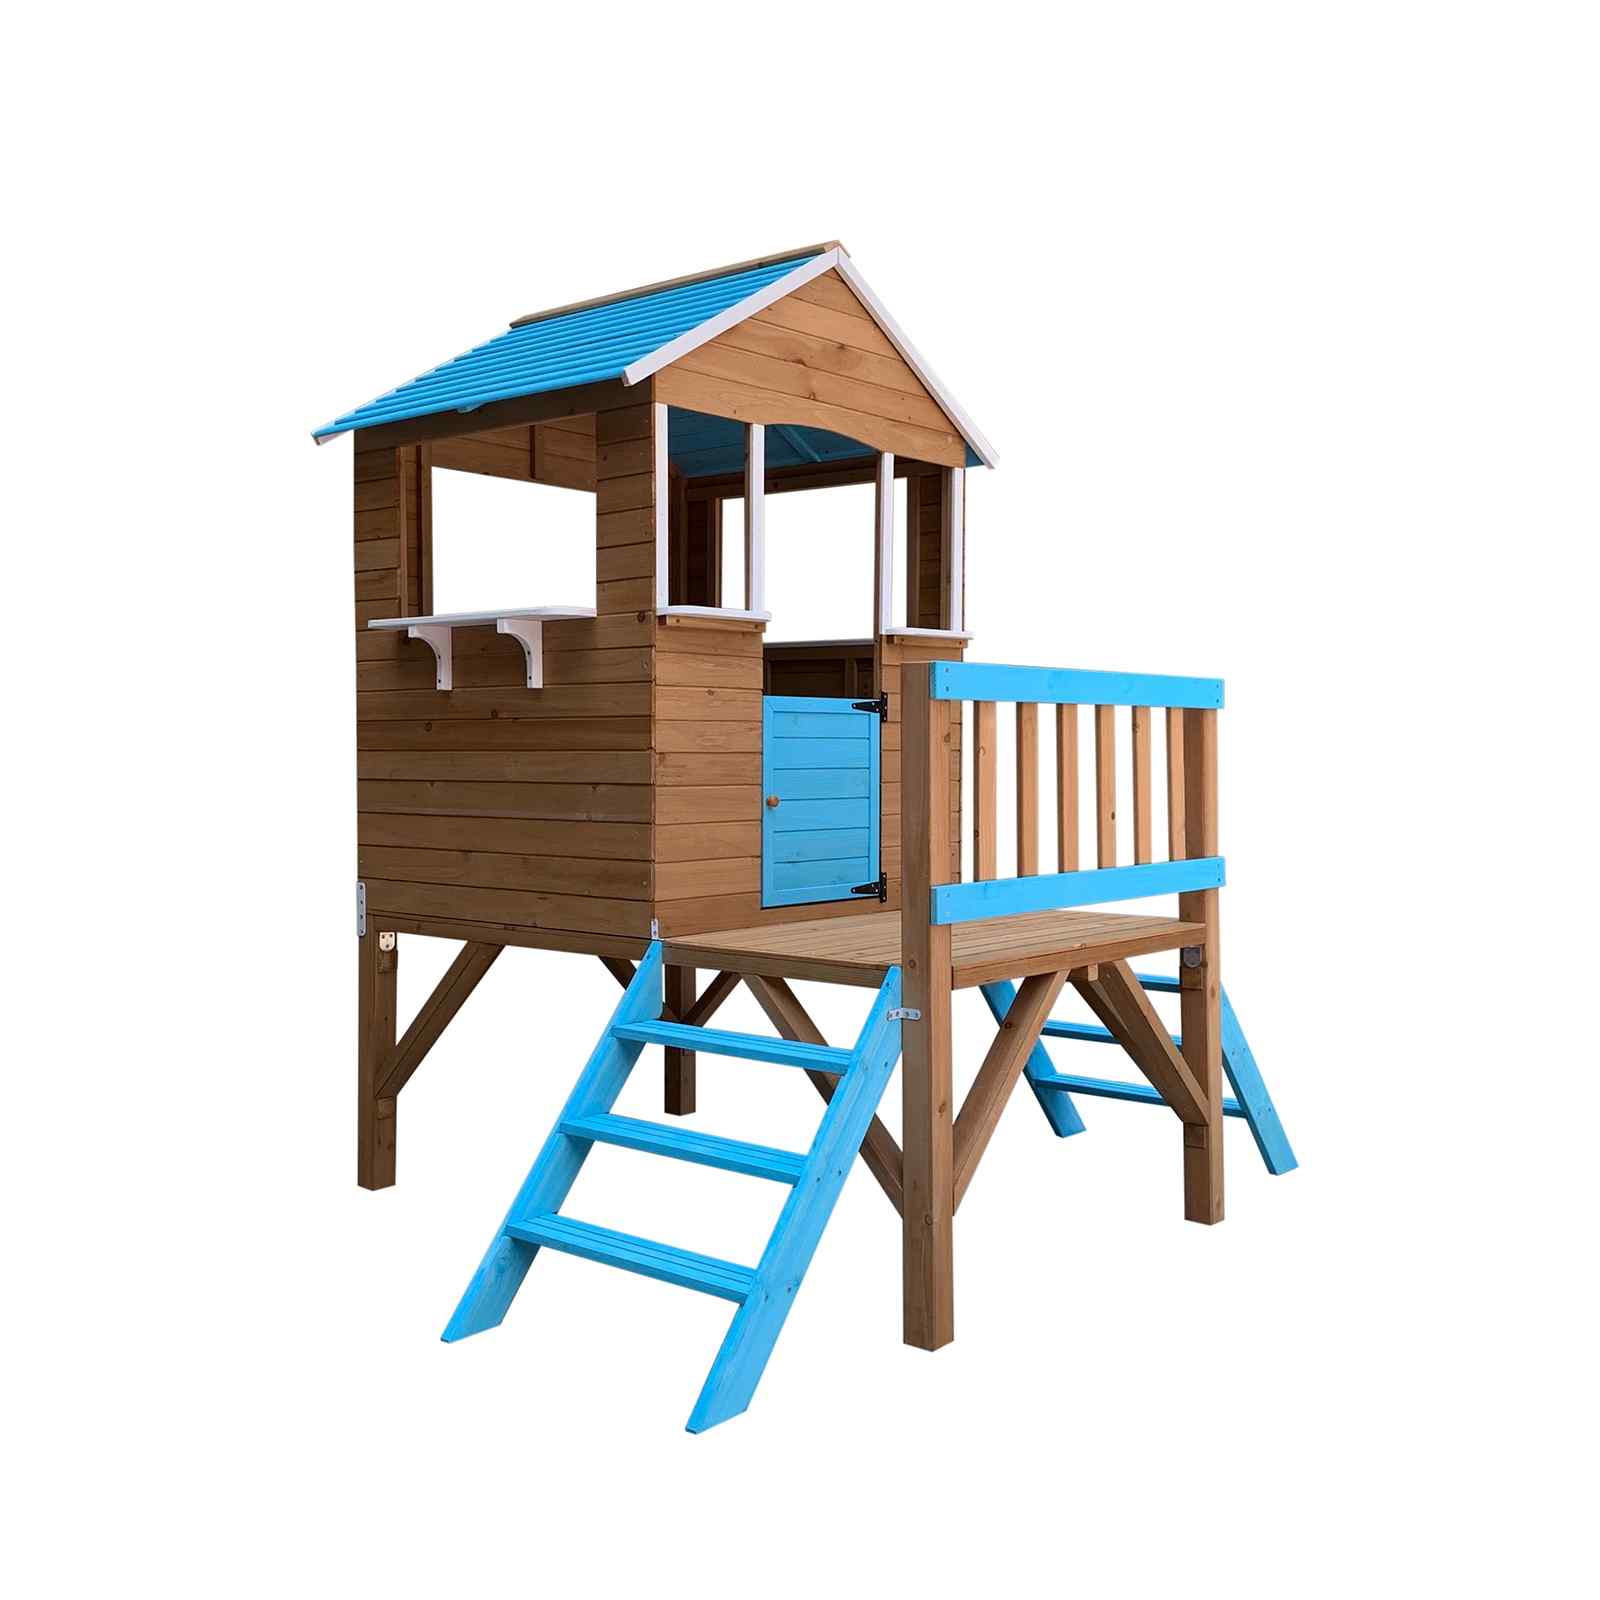 Casita infantil de madera Otto para juego de niños 3.6 m²